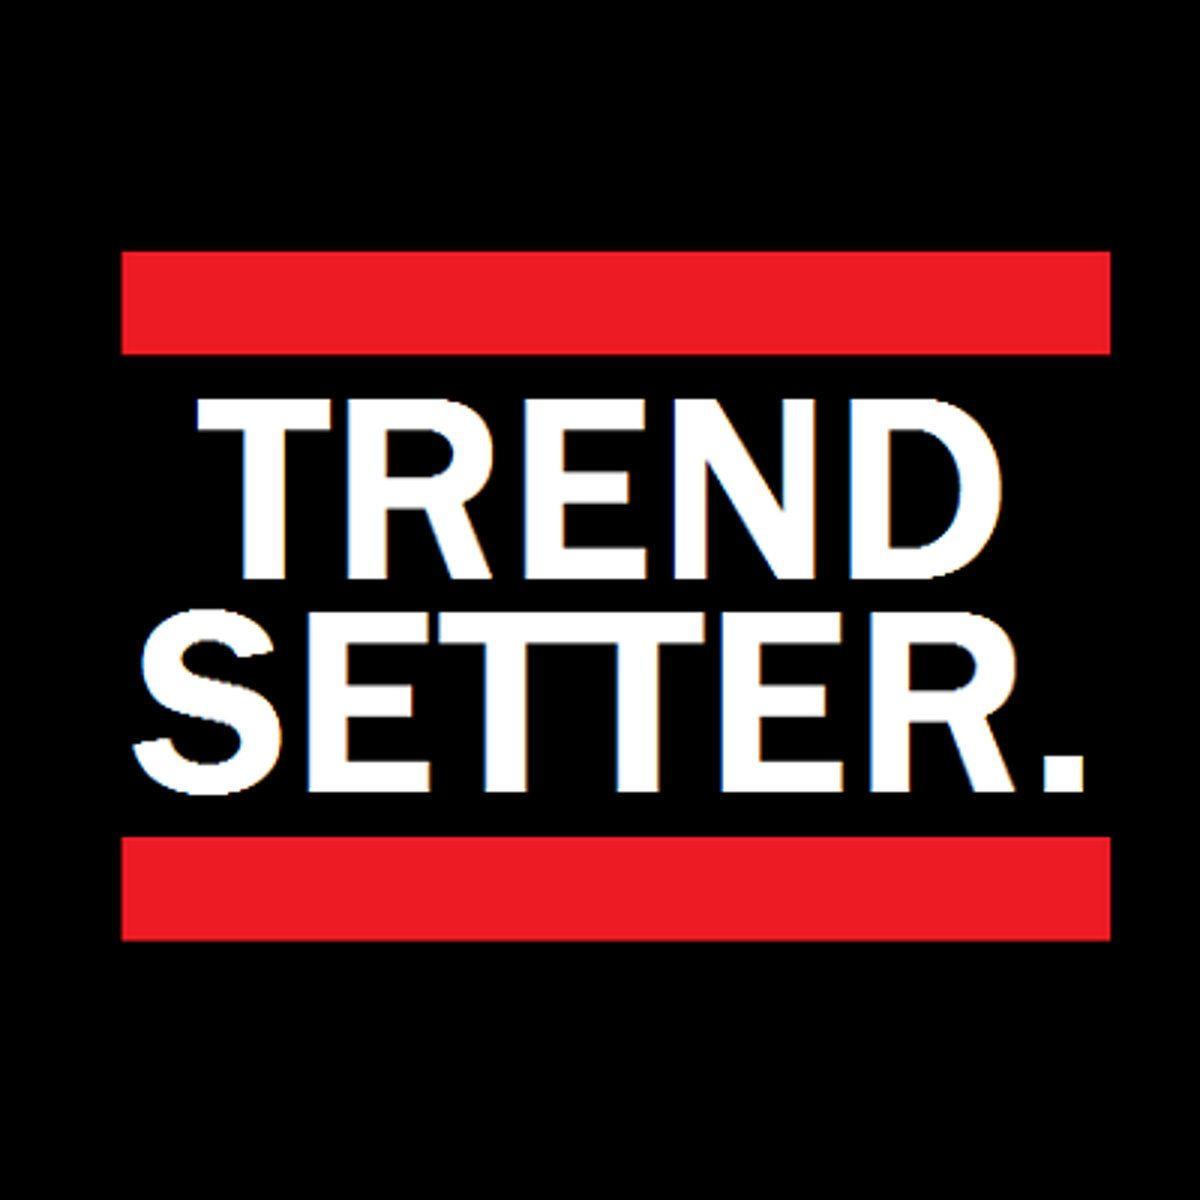 Trendsetter Logo - The Bits. trendsetter